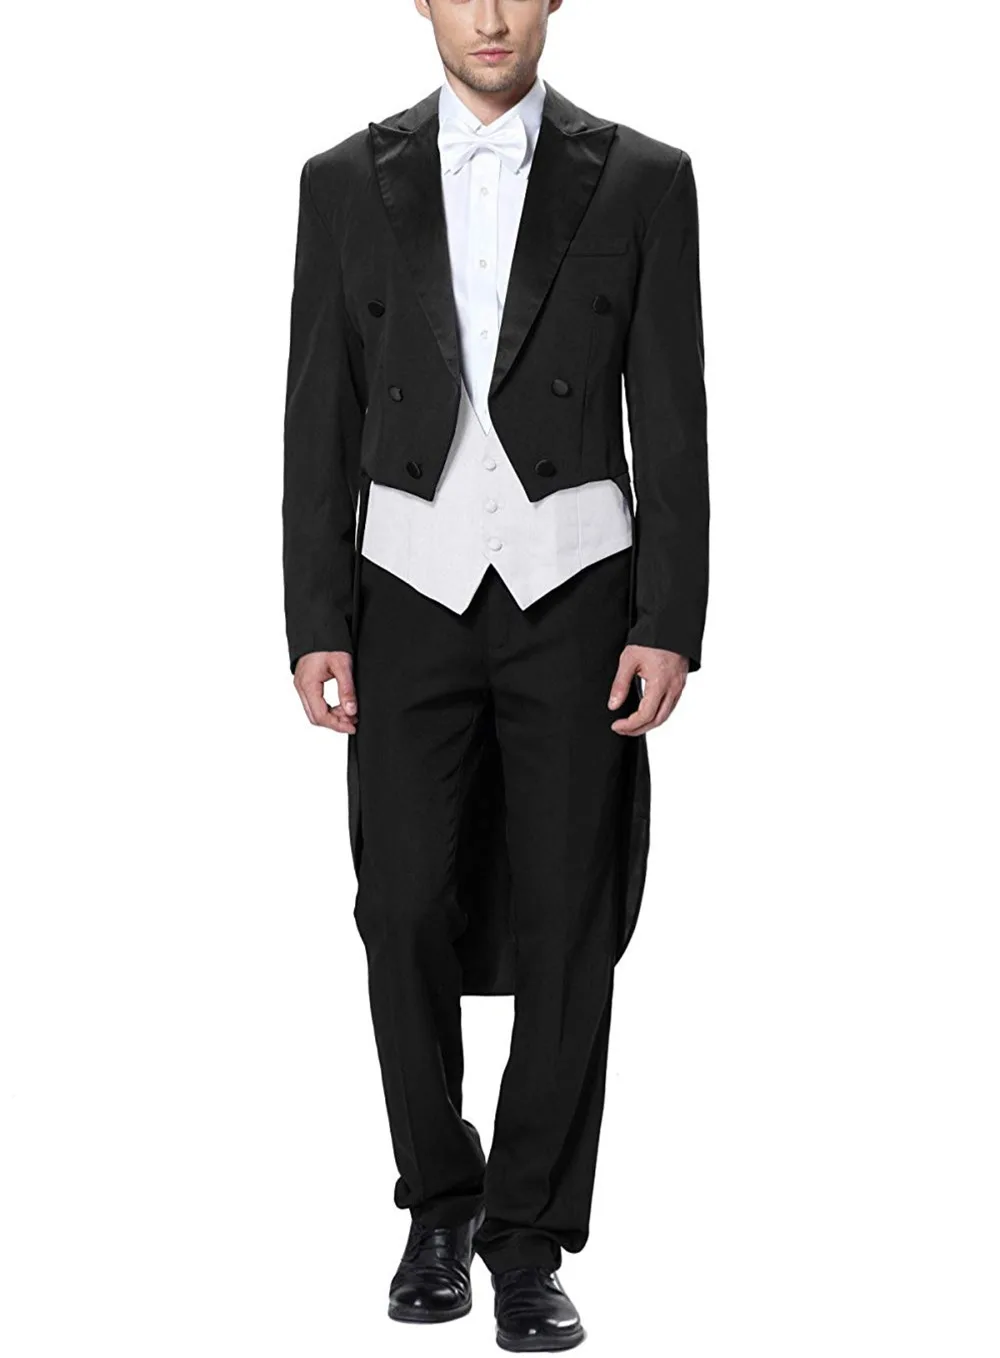 Men's White House Steward Dress Leisure Tuxedo 3-piece Suit Business Blazer Jacket Vest & Pants